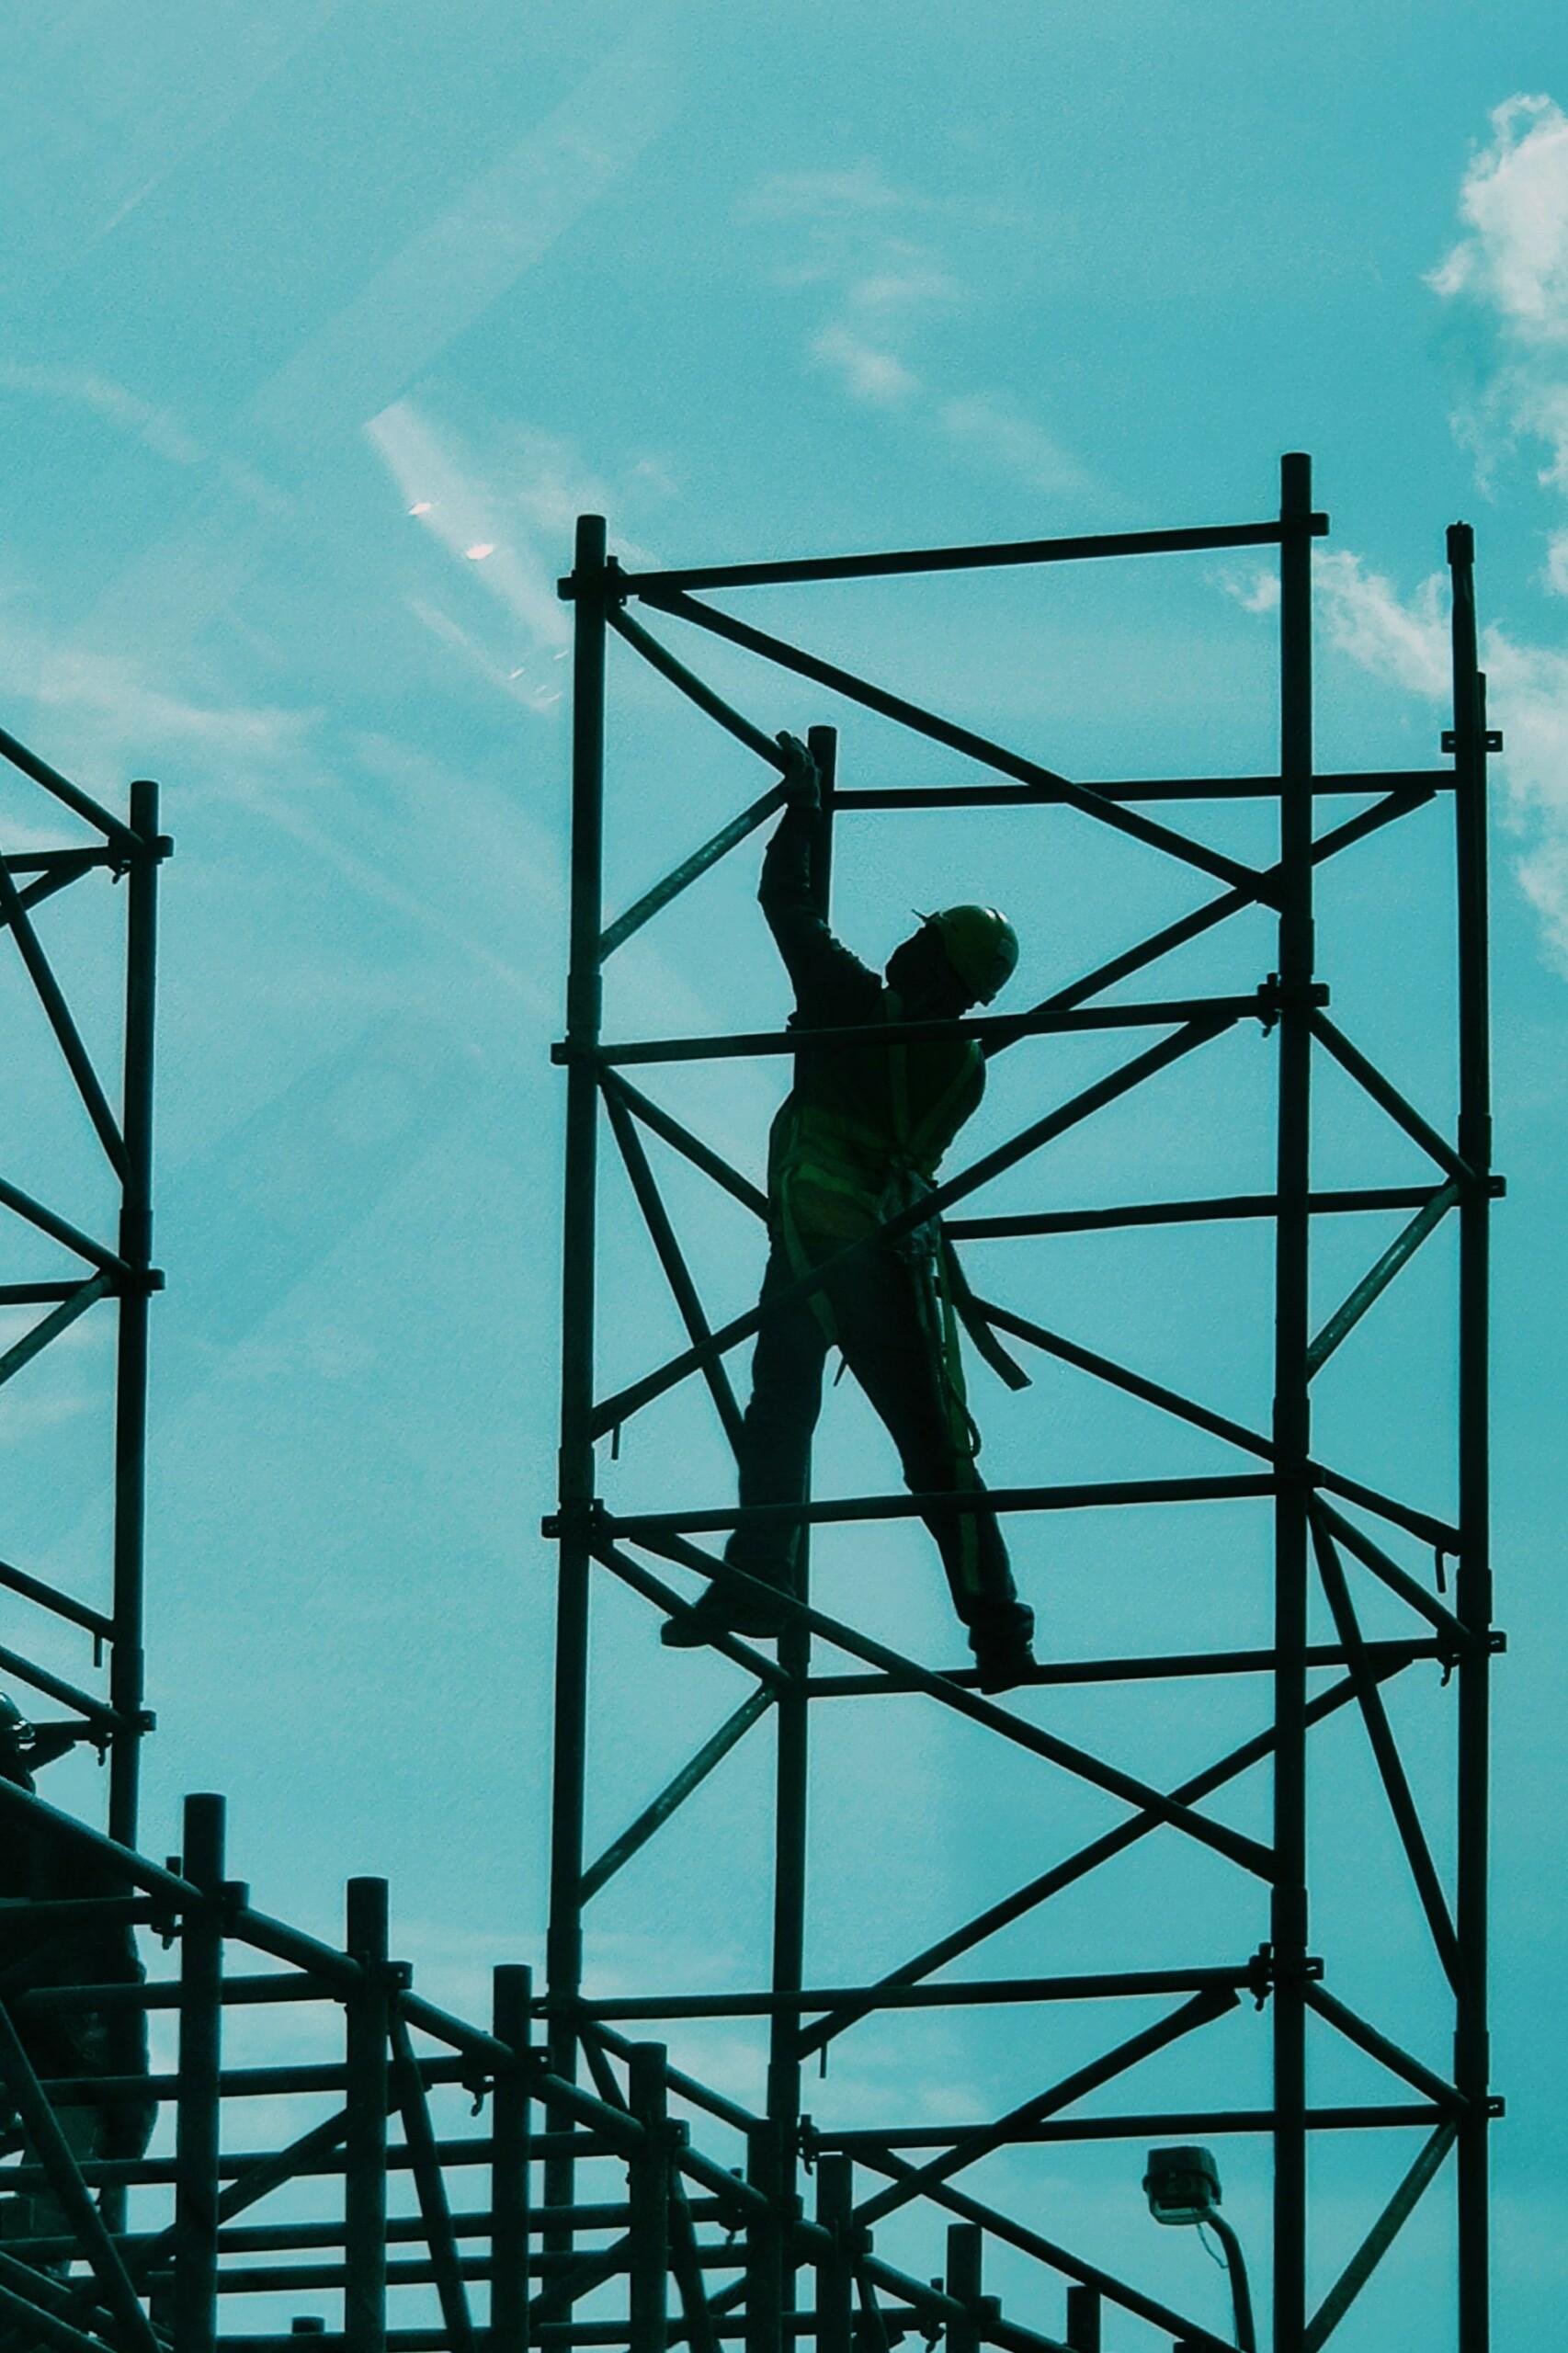 Man on a scaffolding